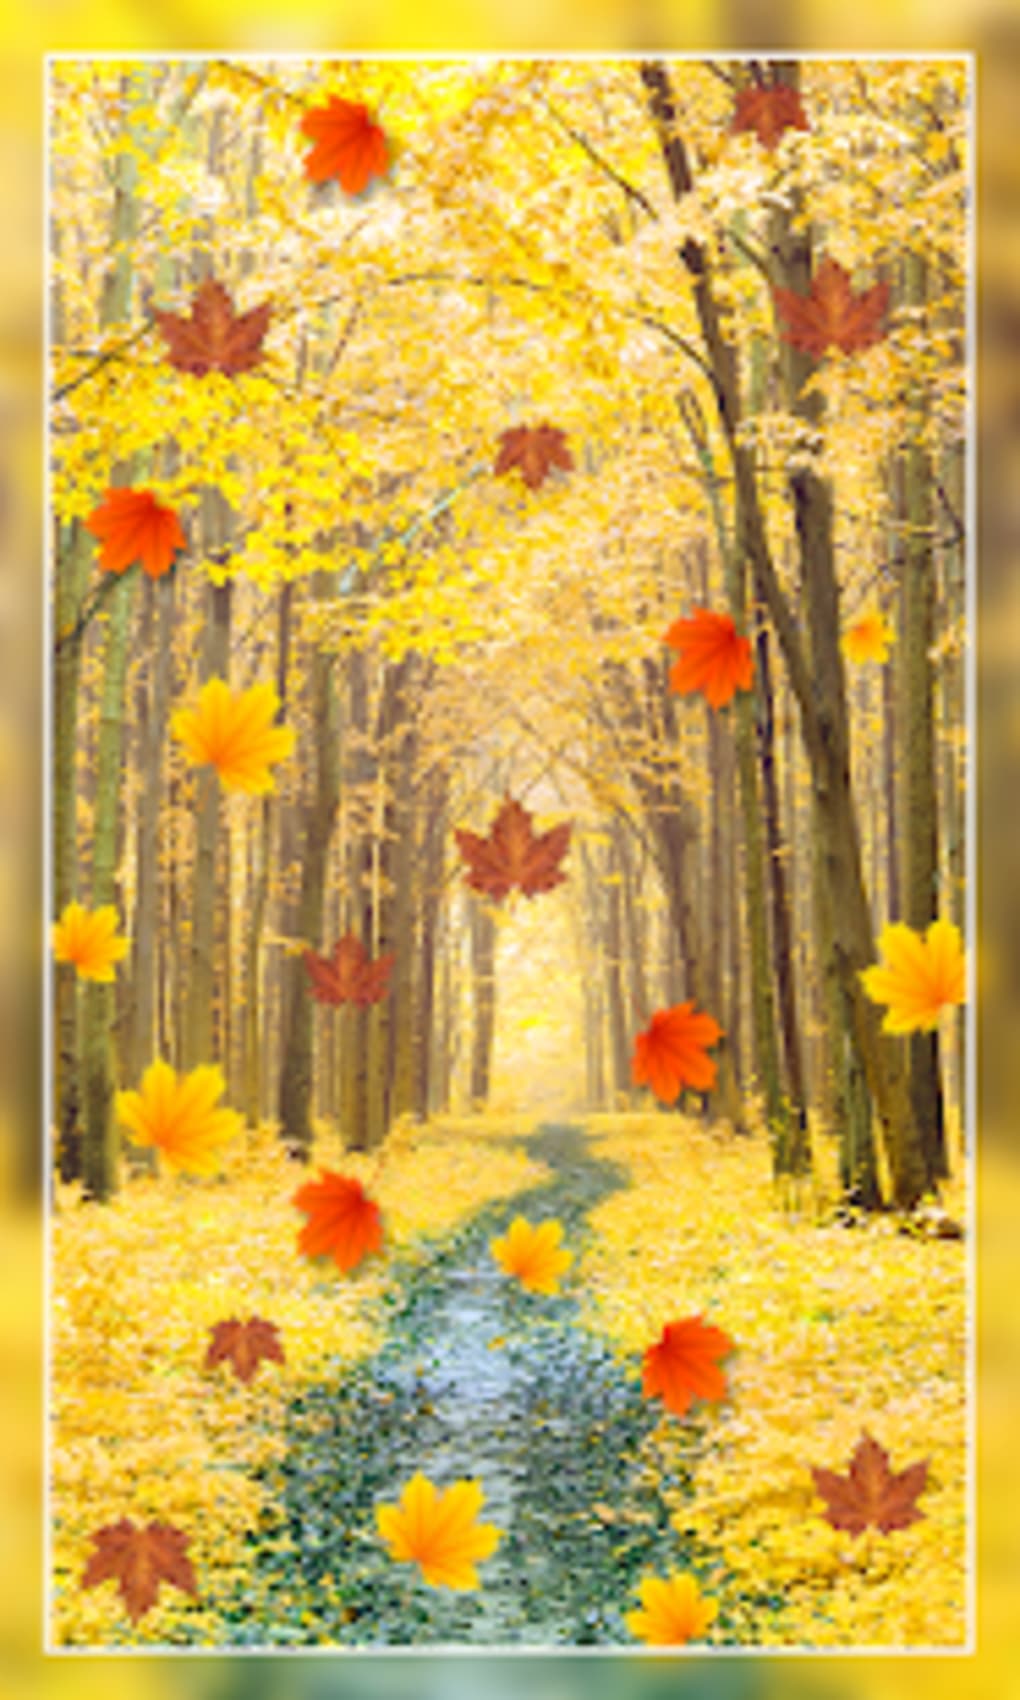 Nature Live Wallpaper - Sunflower - HD Wallpaper 